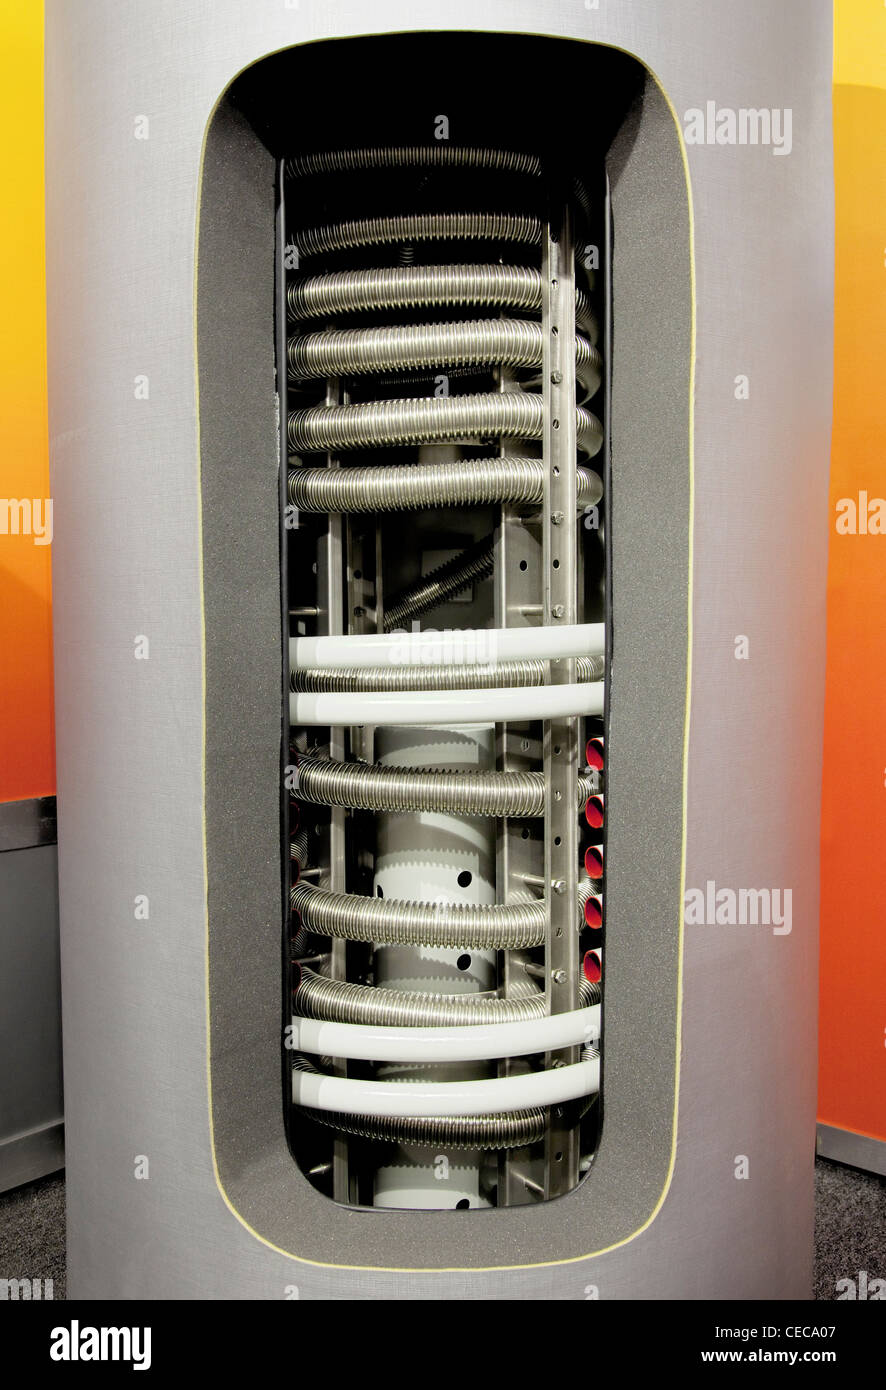 Moderno sistema de agua caliente del tanque de almacenamiento de agua, circuitos de calefacción con visible dentro y cortar el aislamiento Foto de stock